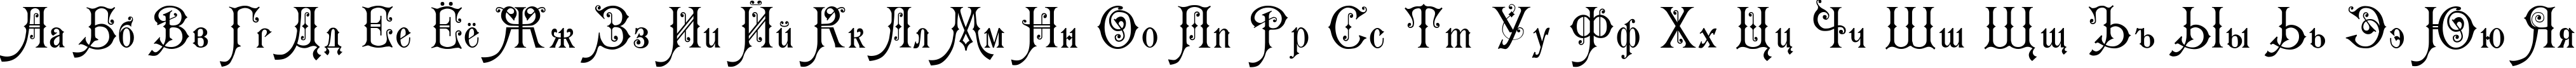 Пример написания русского алфавита шрифтом Karmen